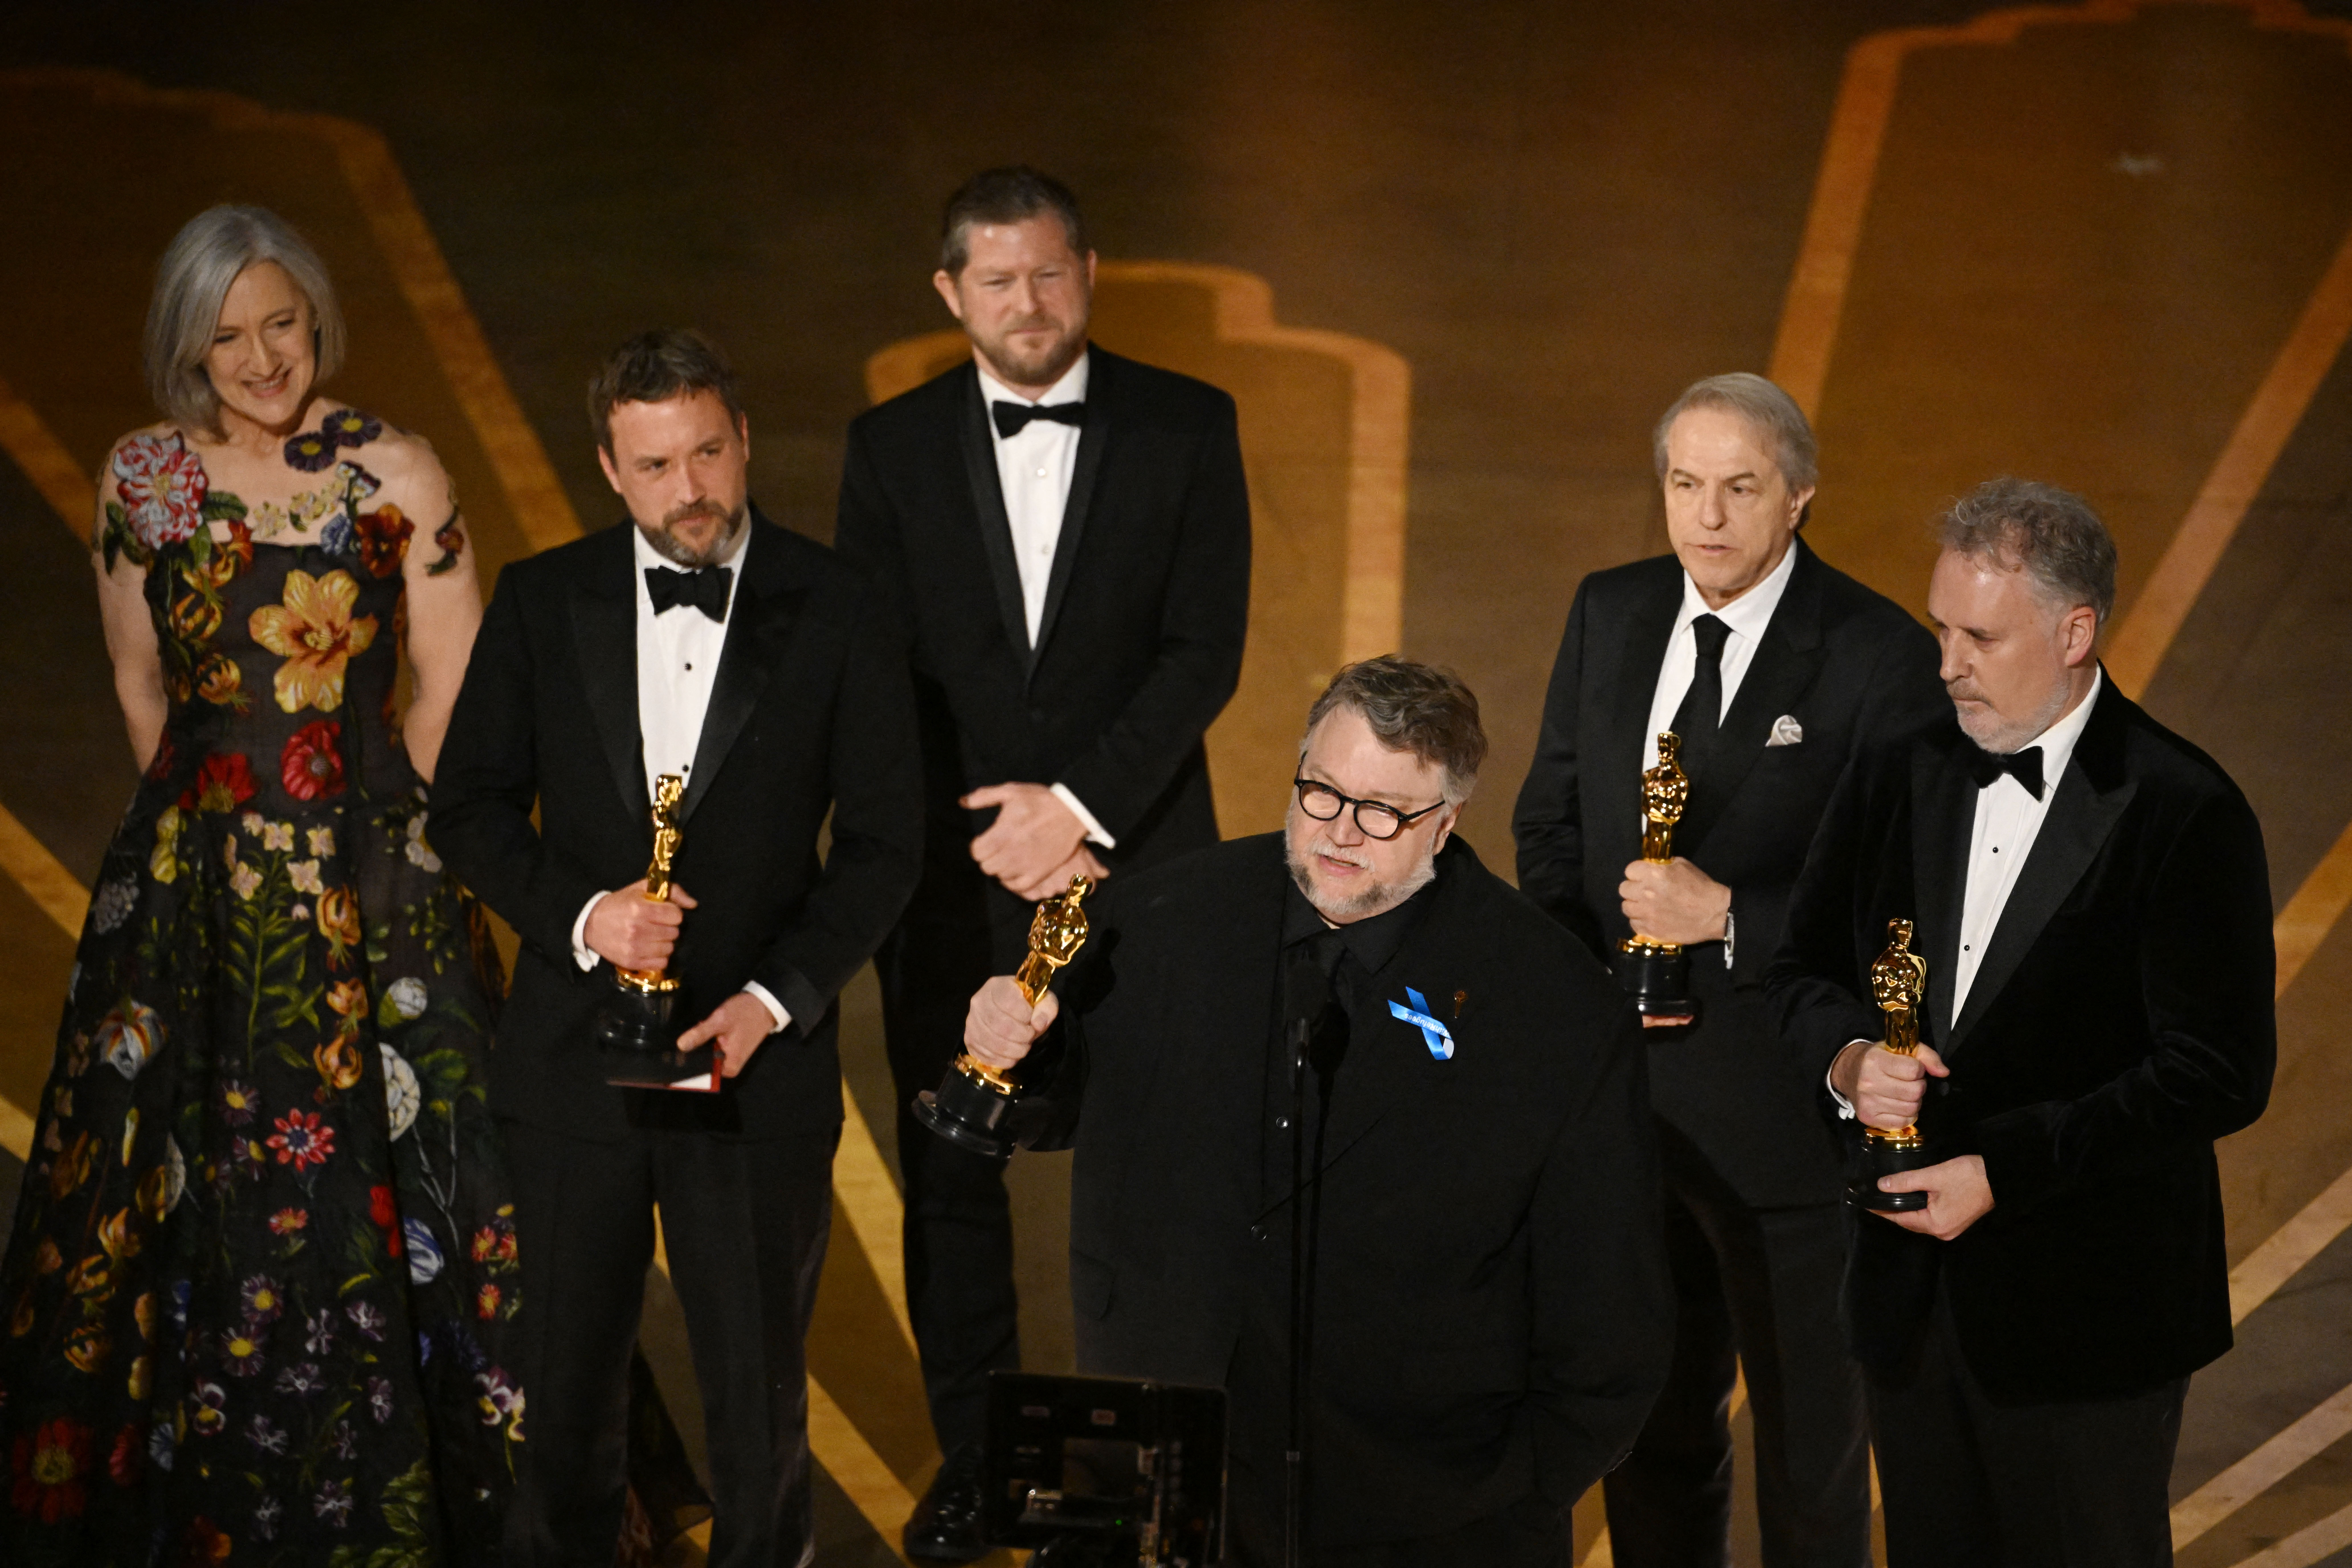 95th Annual Academy Awards - Show